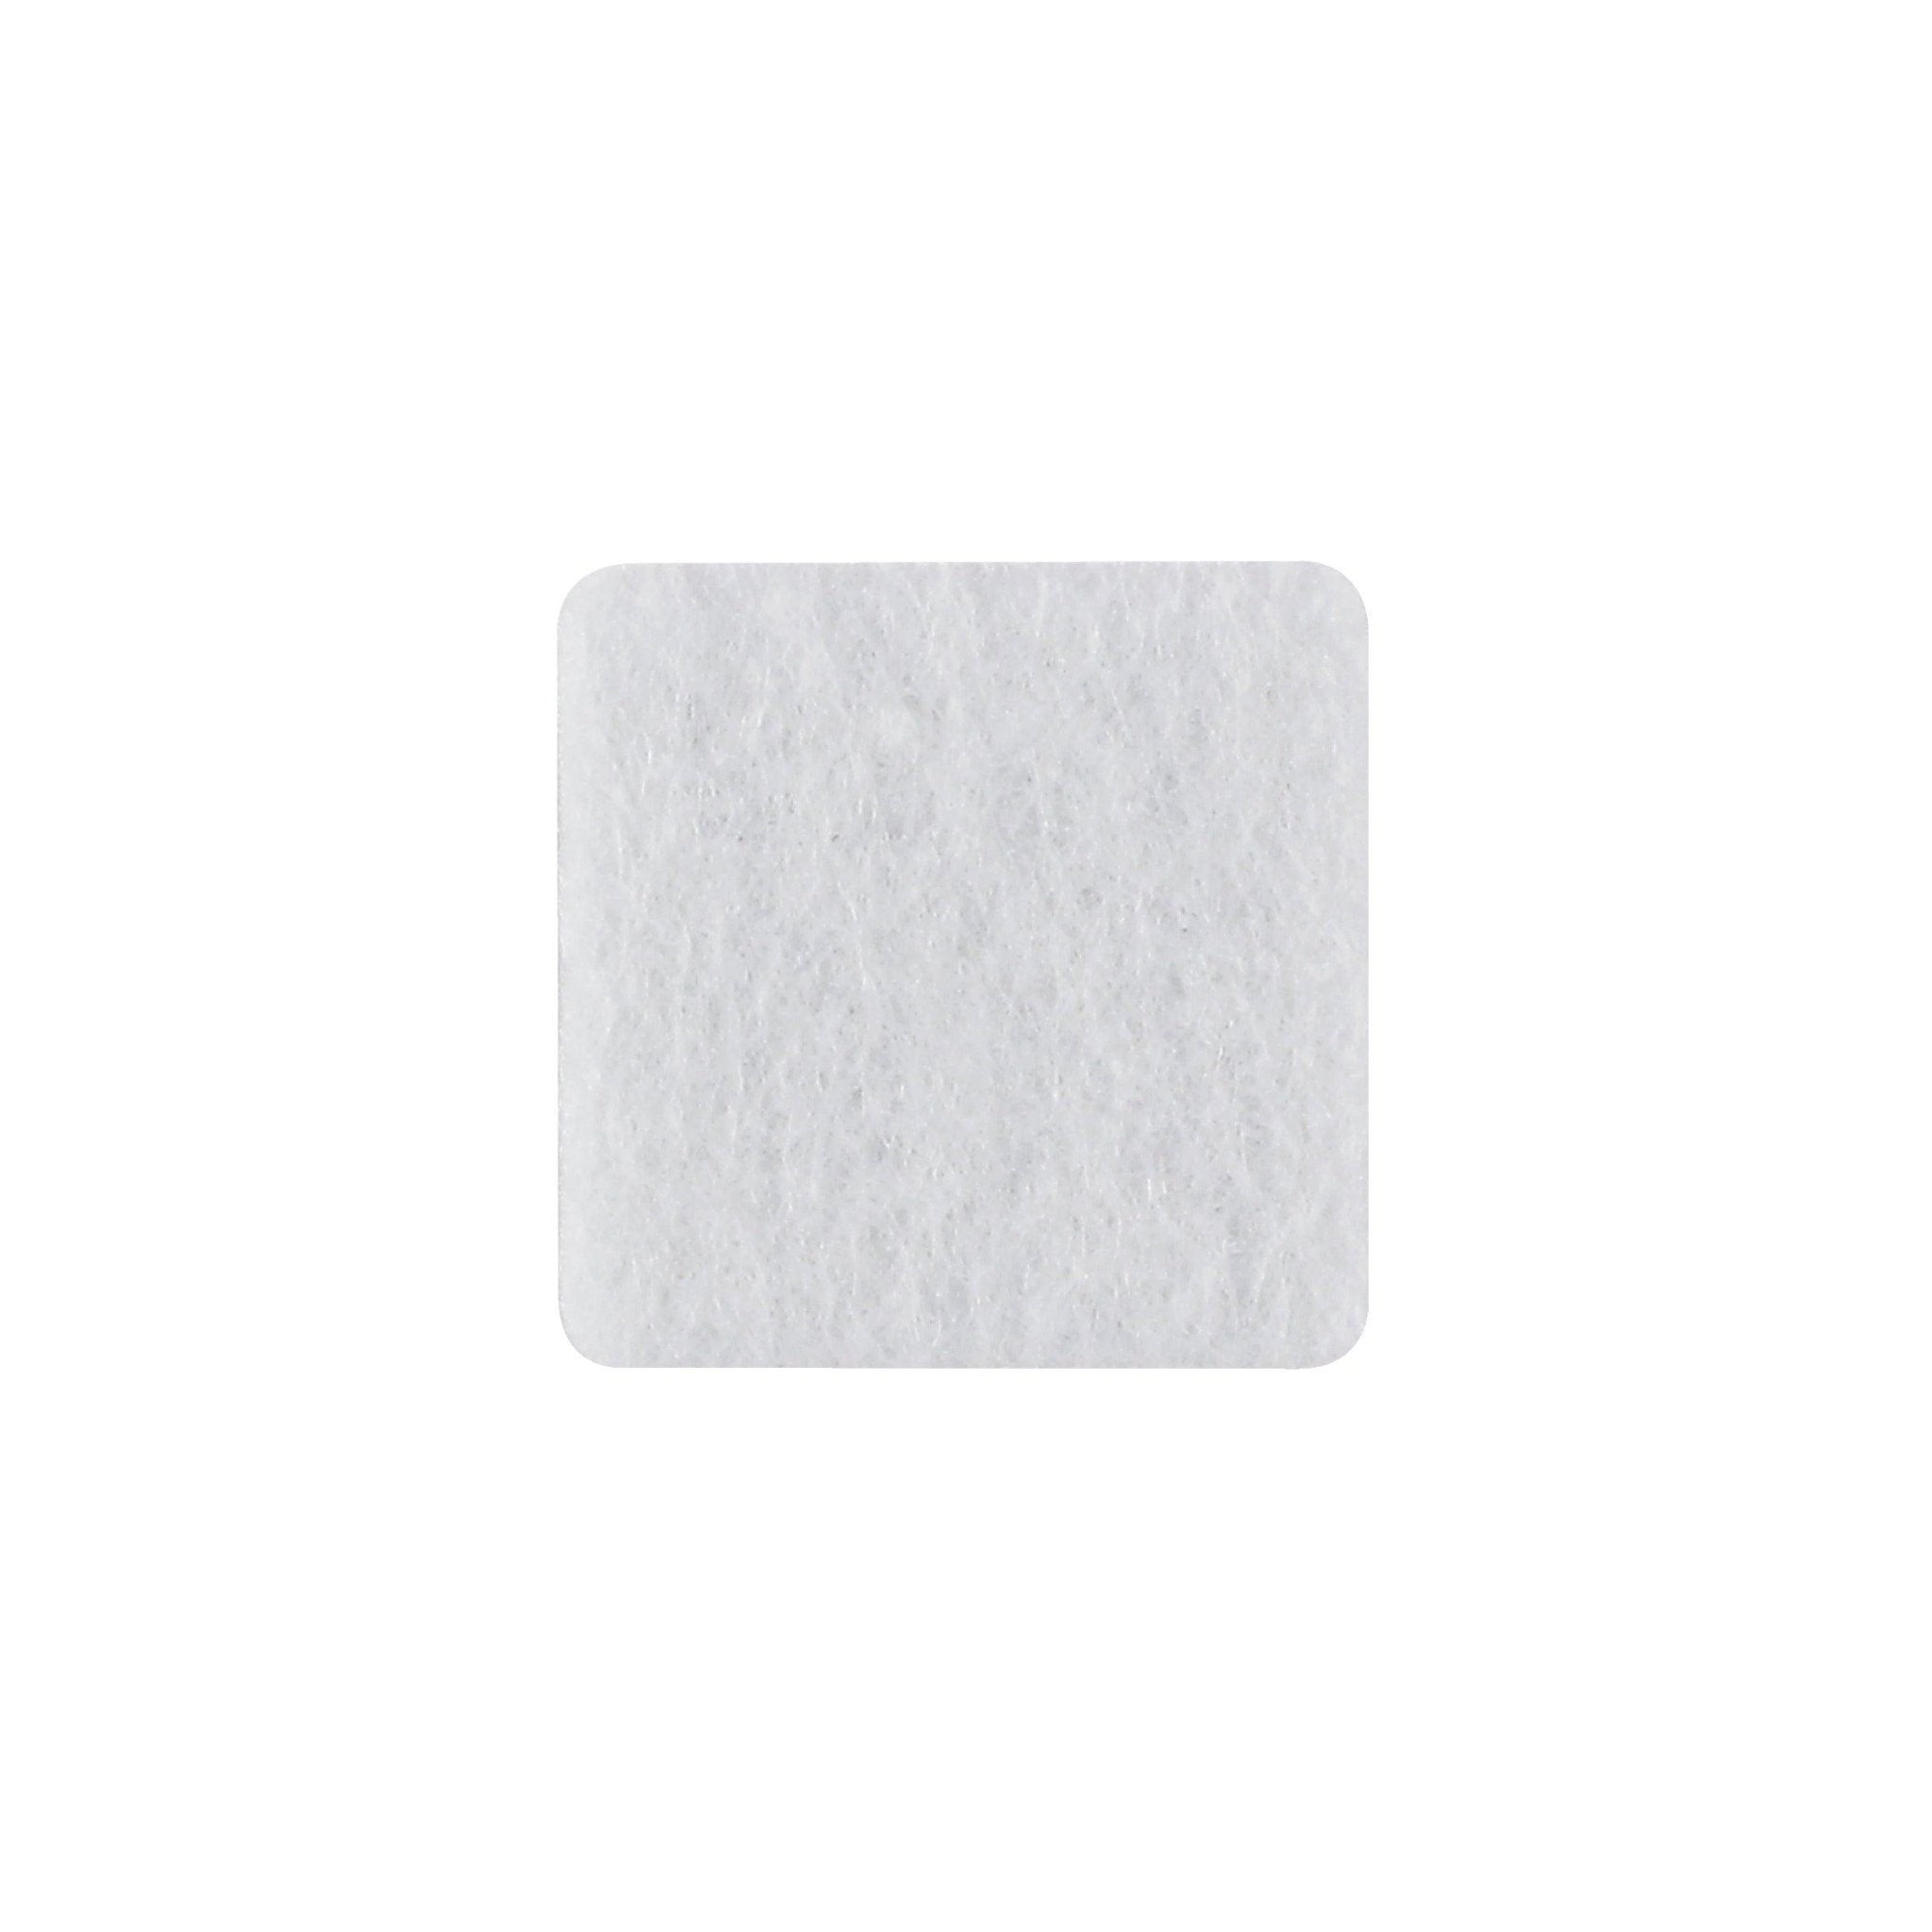 Anti-krasvilt, zelfklevend wit 75 x 100 mm per 1 stuk - BLADI meubelstoffen